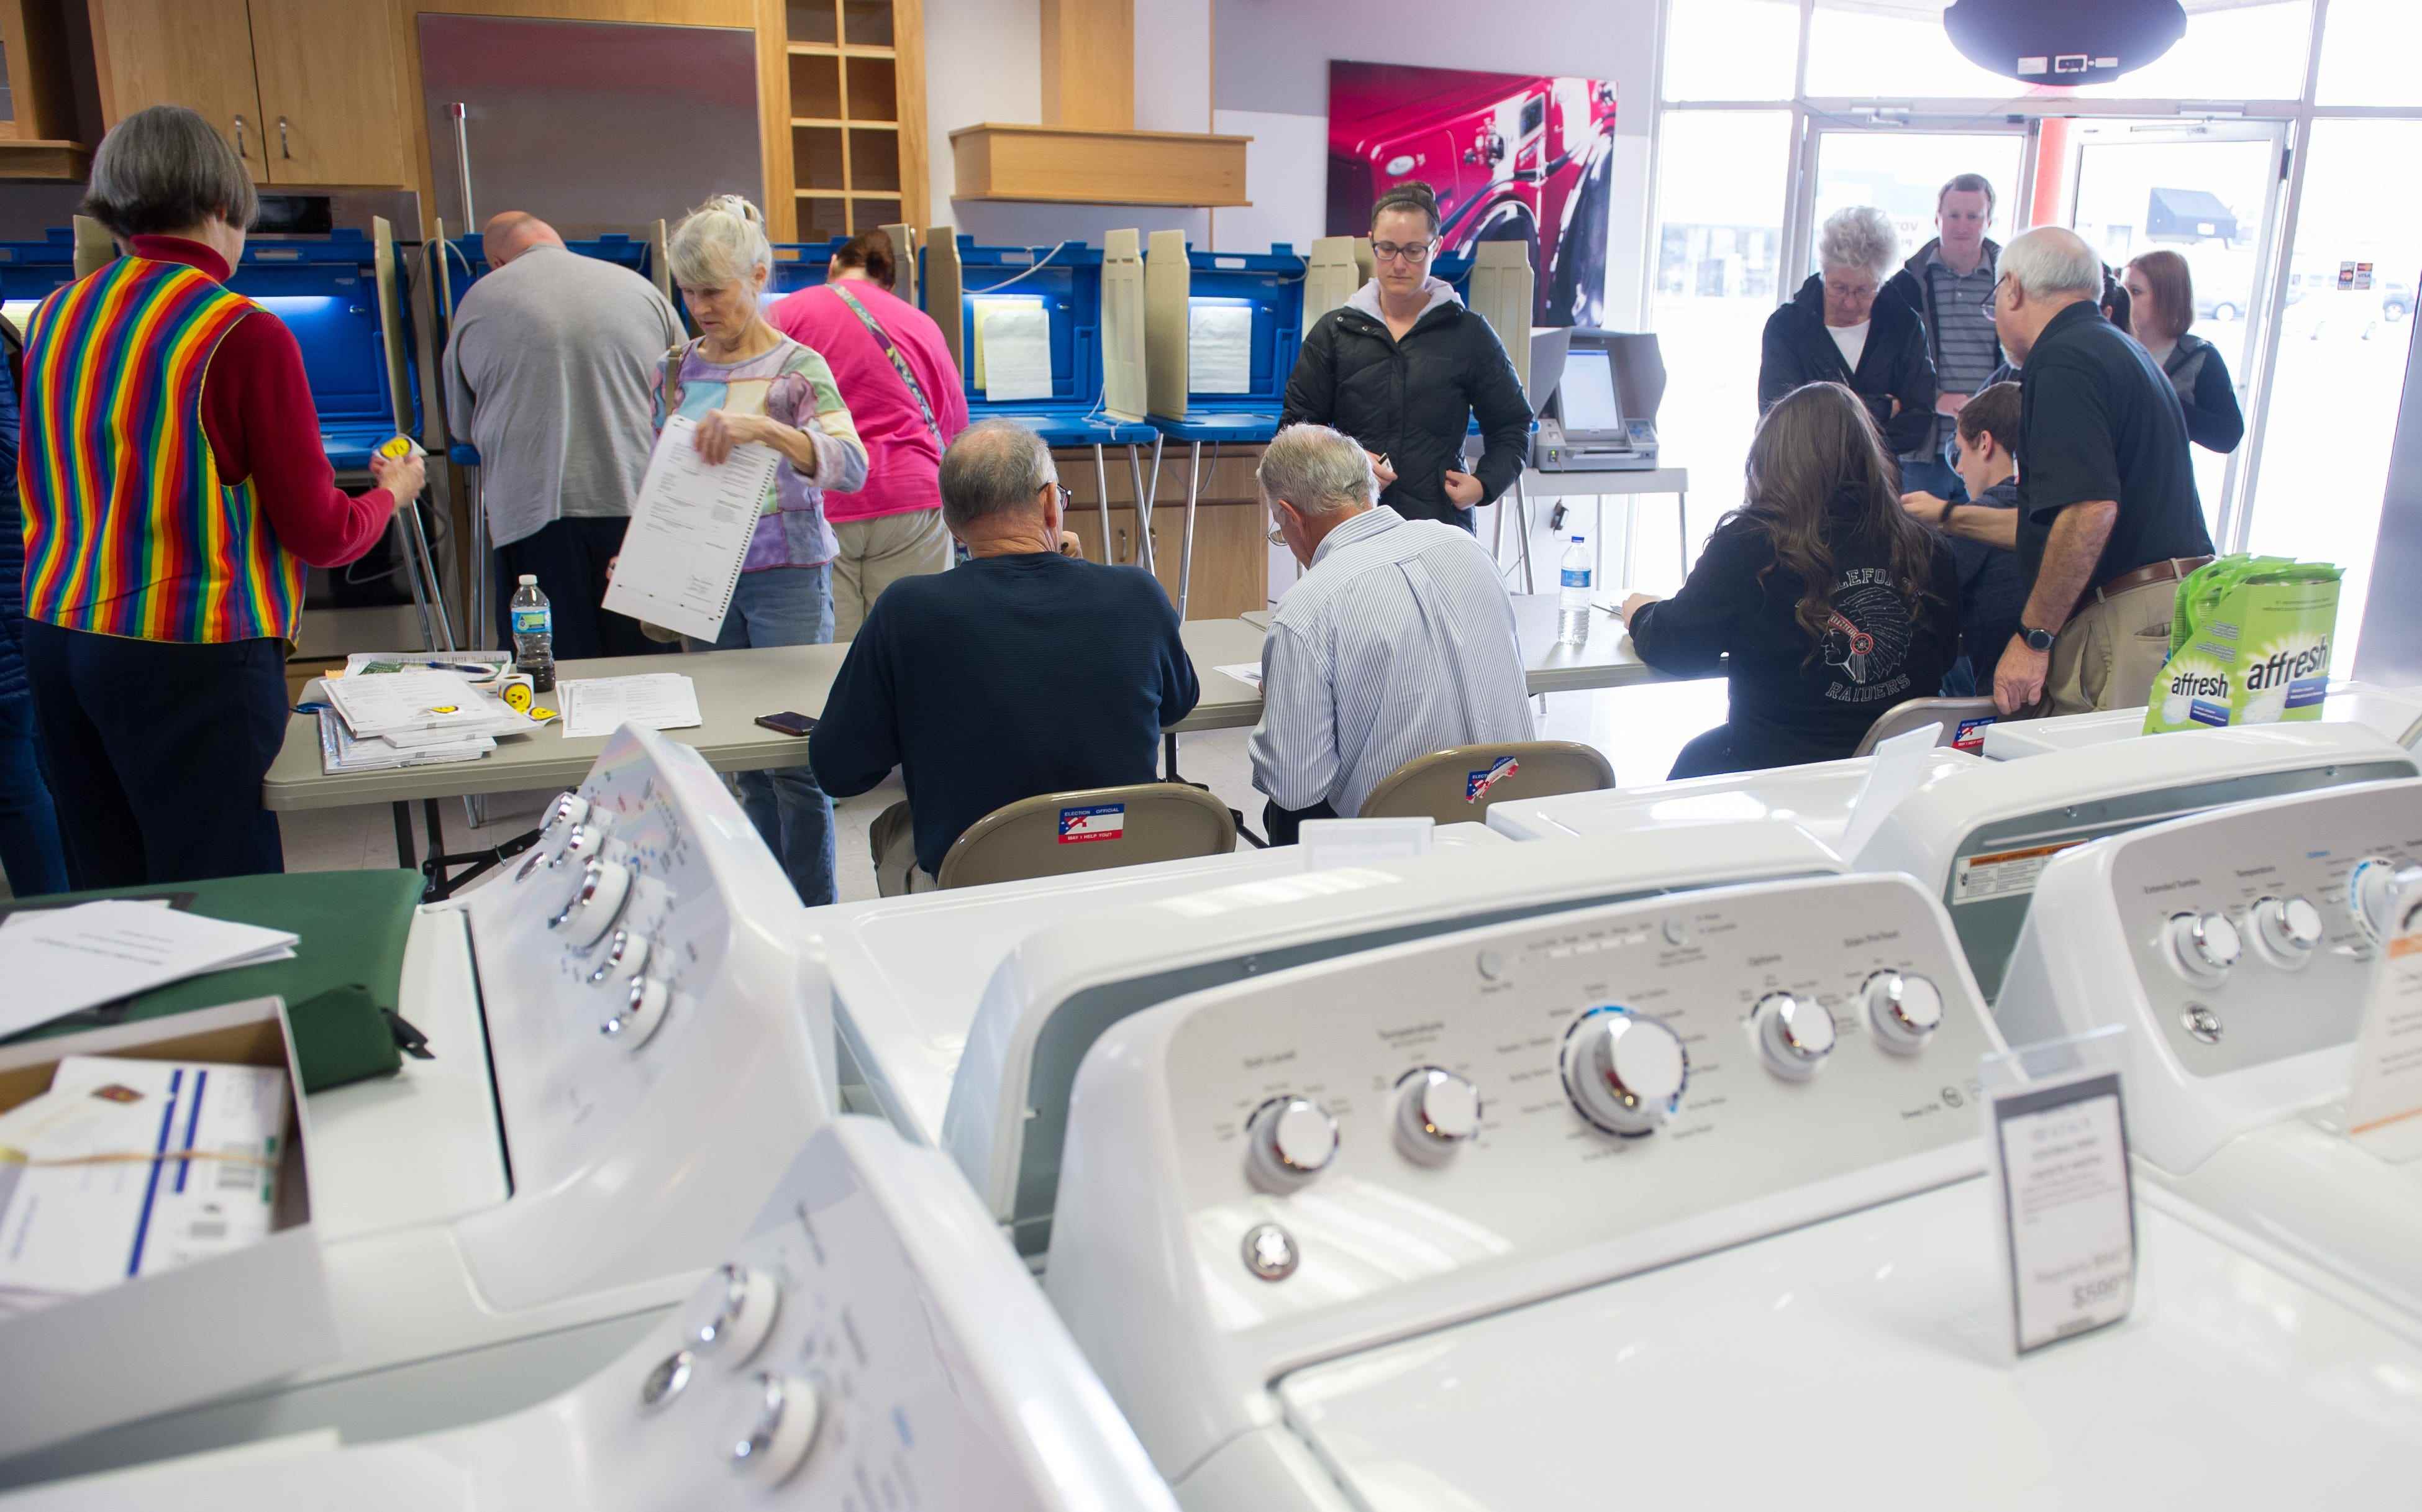 Die Wähler geben ihre Stimmen in einem Wahllokal in Mikes TV and Appliance am 8. November 2016 im State College, Pennsylvania, ab